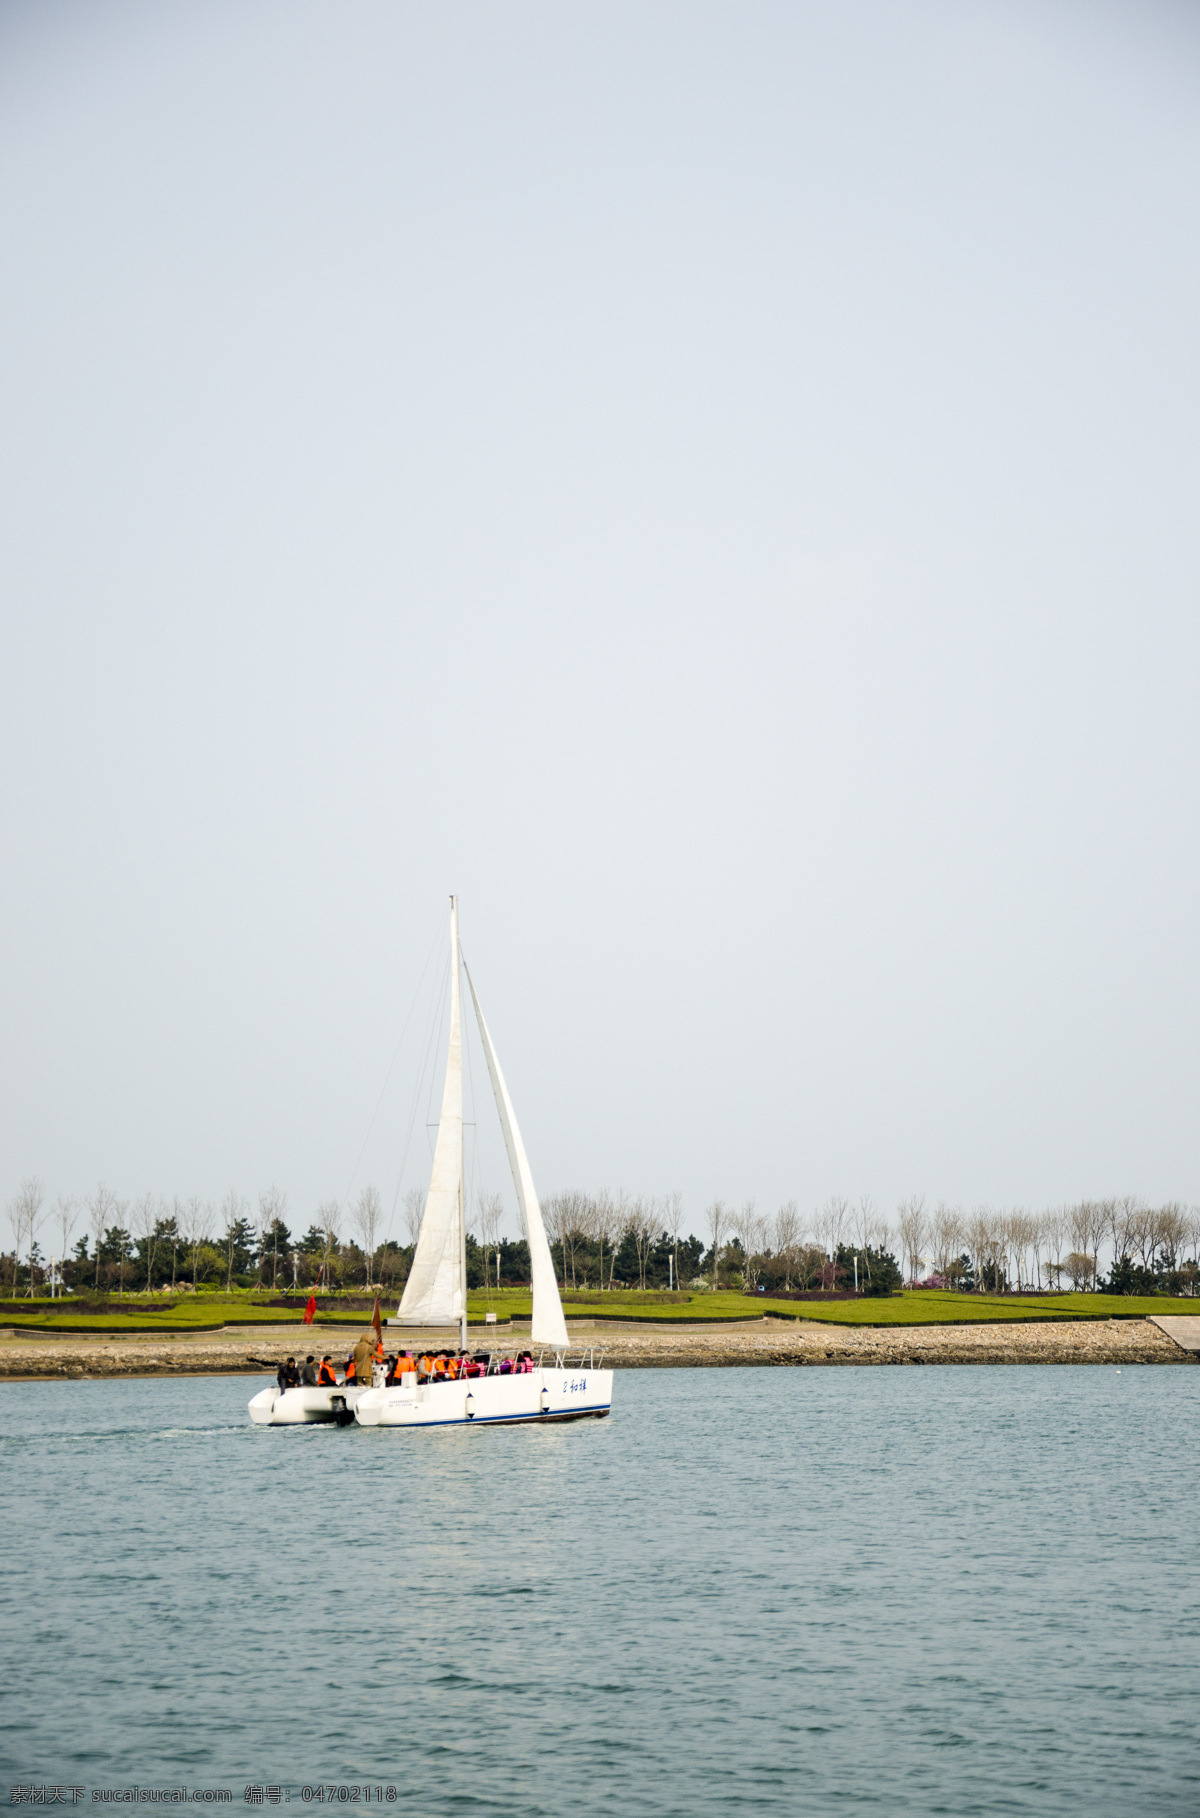 海边 风景图片 帆船 公园 国内旅游 海滨 海水 旅游摄影 绿化 边风景 天空 有空 出海 日照海景 风景 生活 旅游餐饮